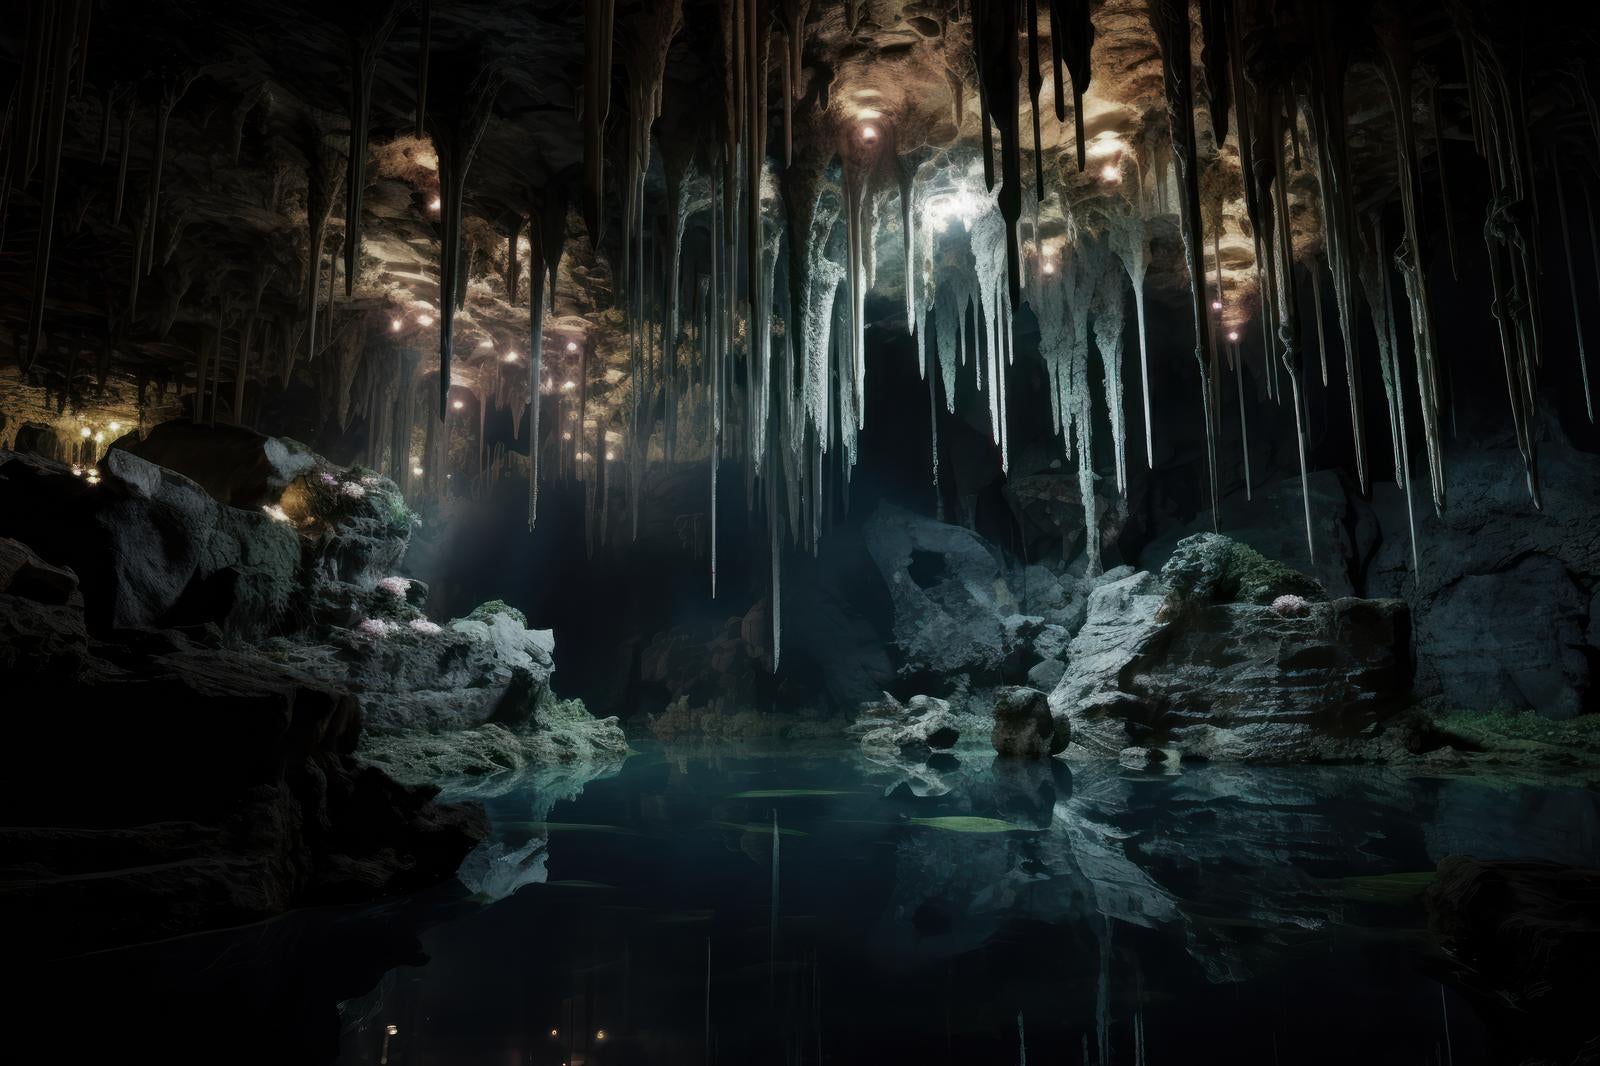 「鍾乳洞の神秘 洞窟と泉が描く地形」の写真